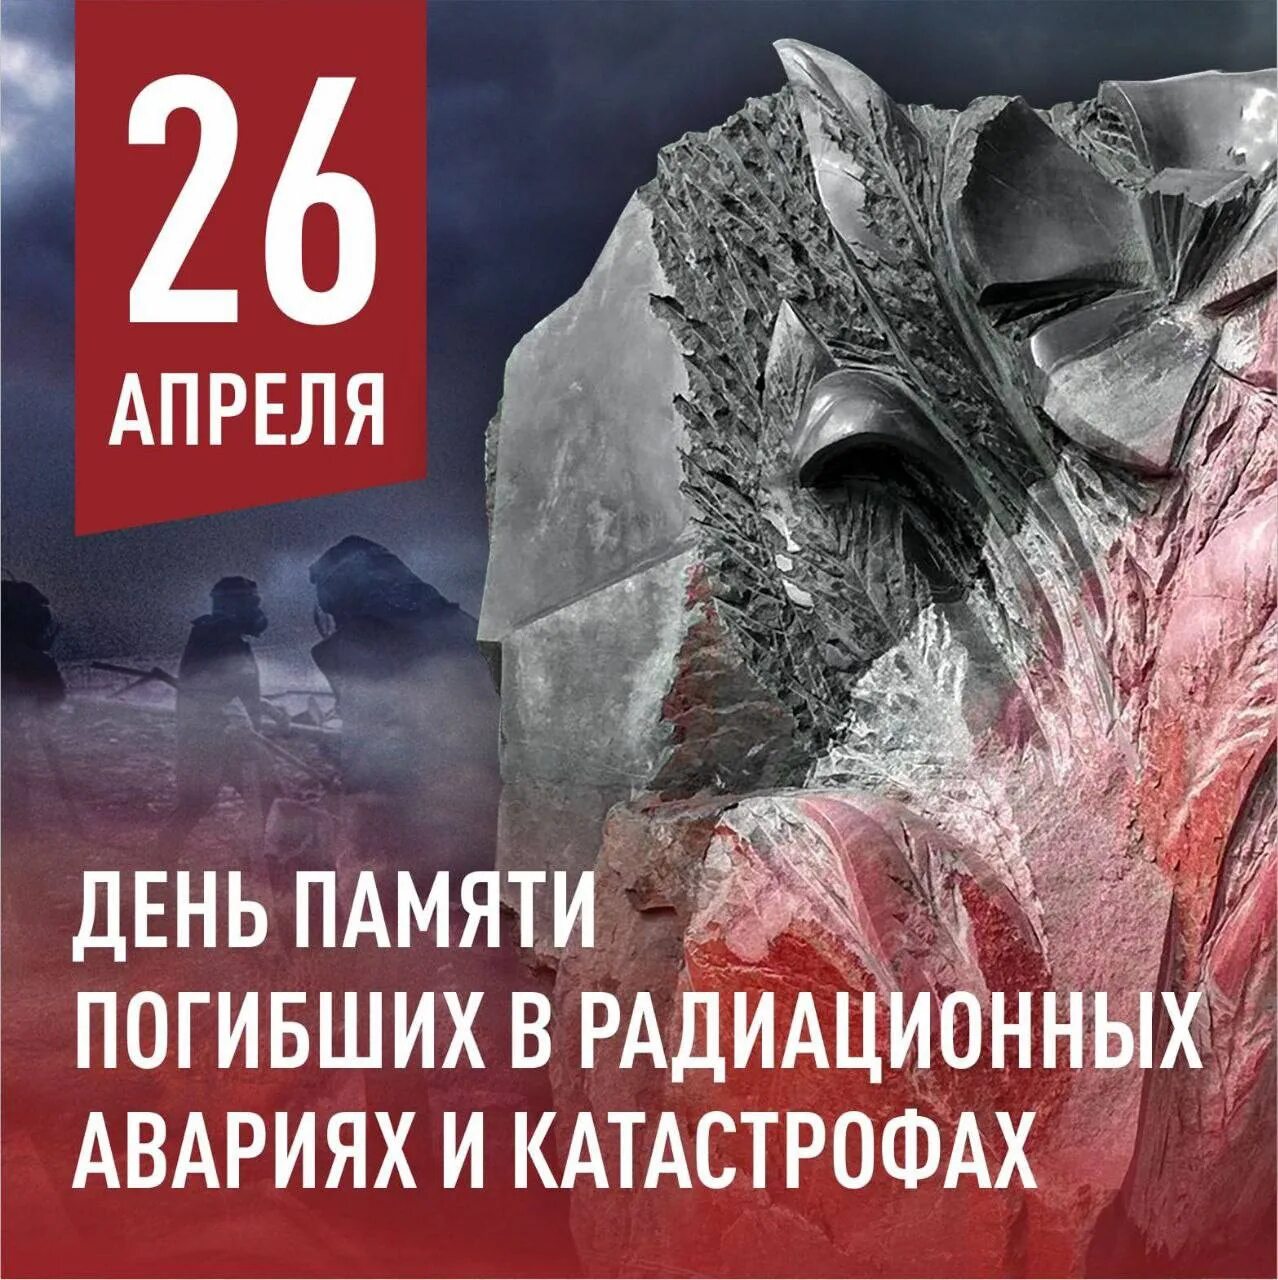 Картинка 26 апреля. 26 Апреля день памяти погибших в радиационных авариях и катастрофах. 26 Апреля день памяти. День памяти погибших в радиационных катастрофах. Чернобыль день памяти.